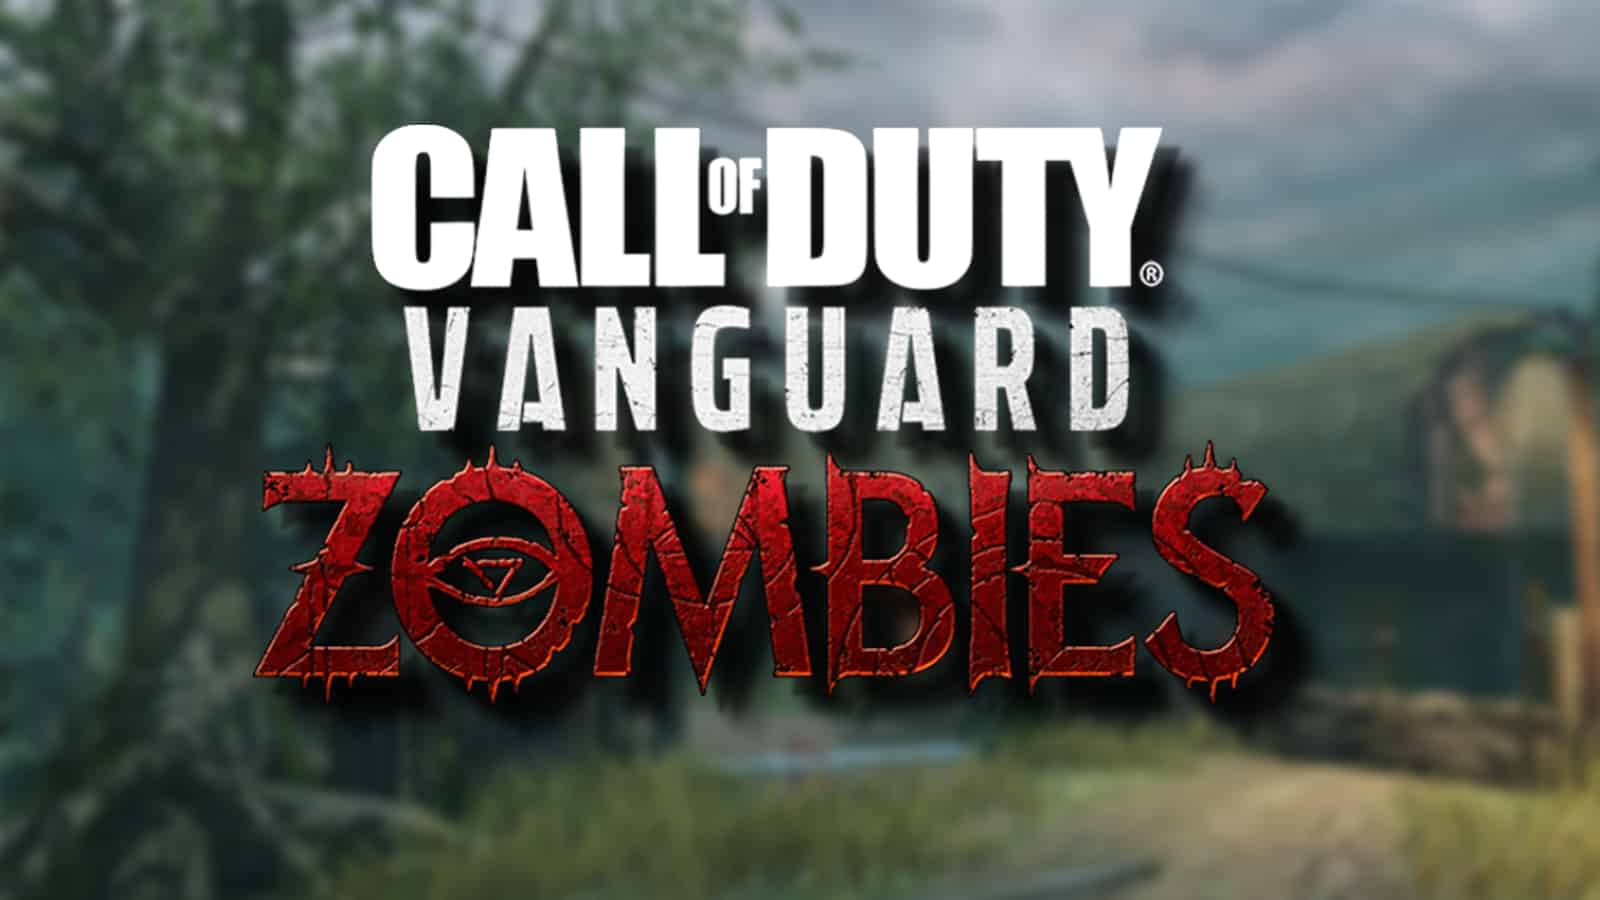 Co-Optimus - News - Classic Zombies Map 'Shi no Numa' Debuts in Call of Duty:  Vanguard